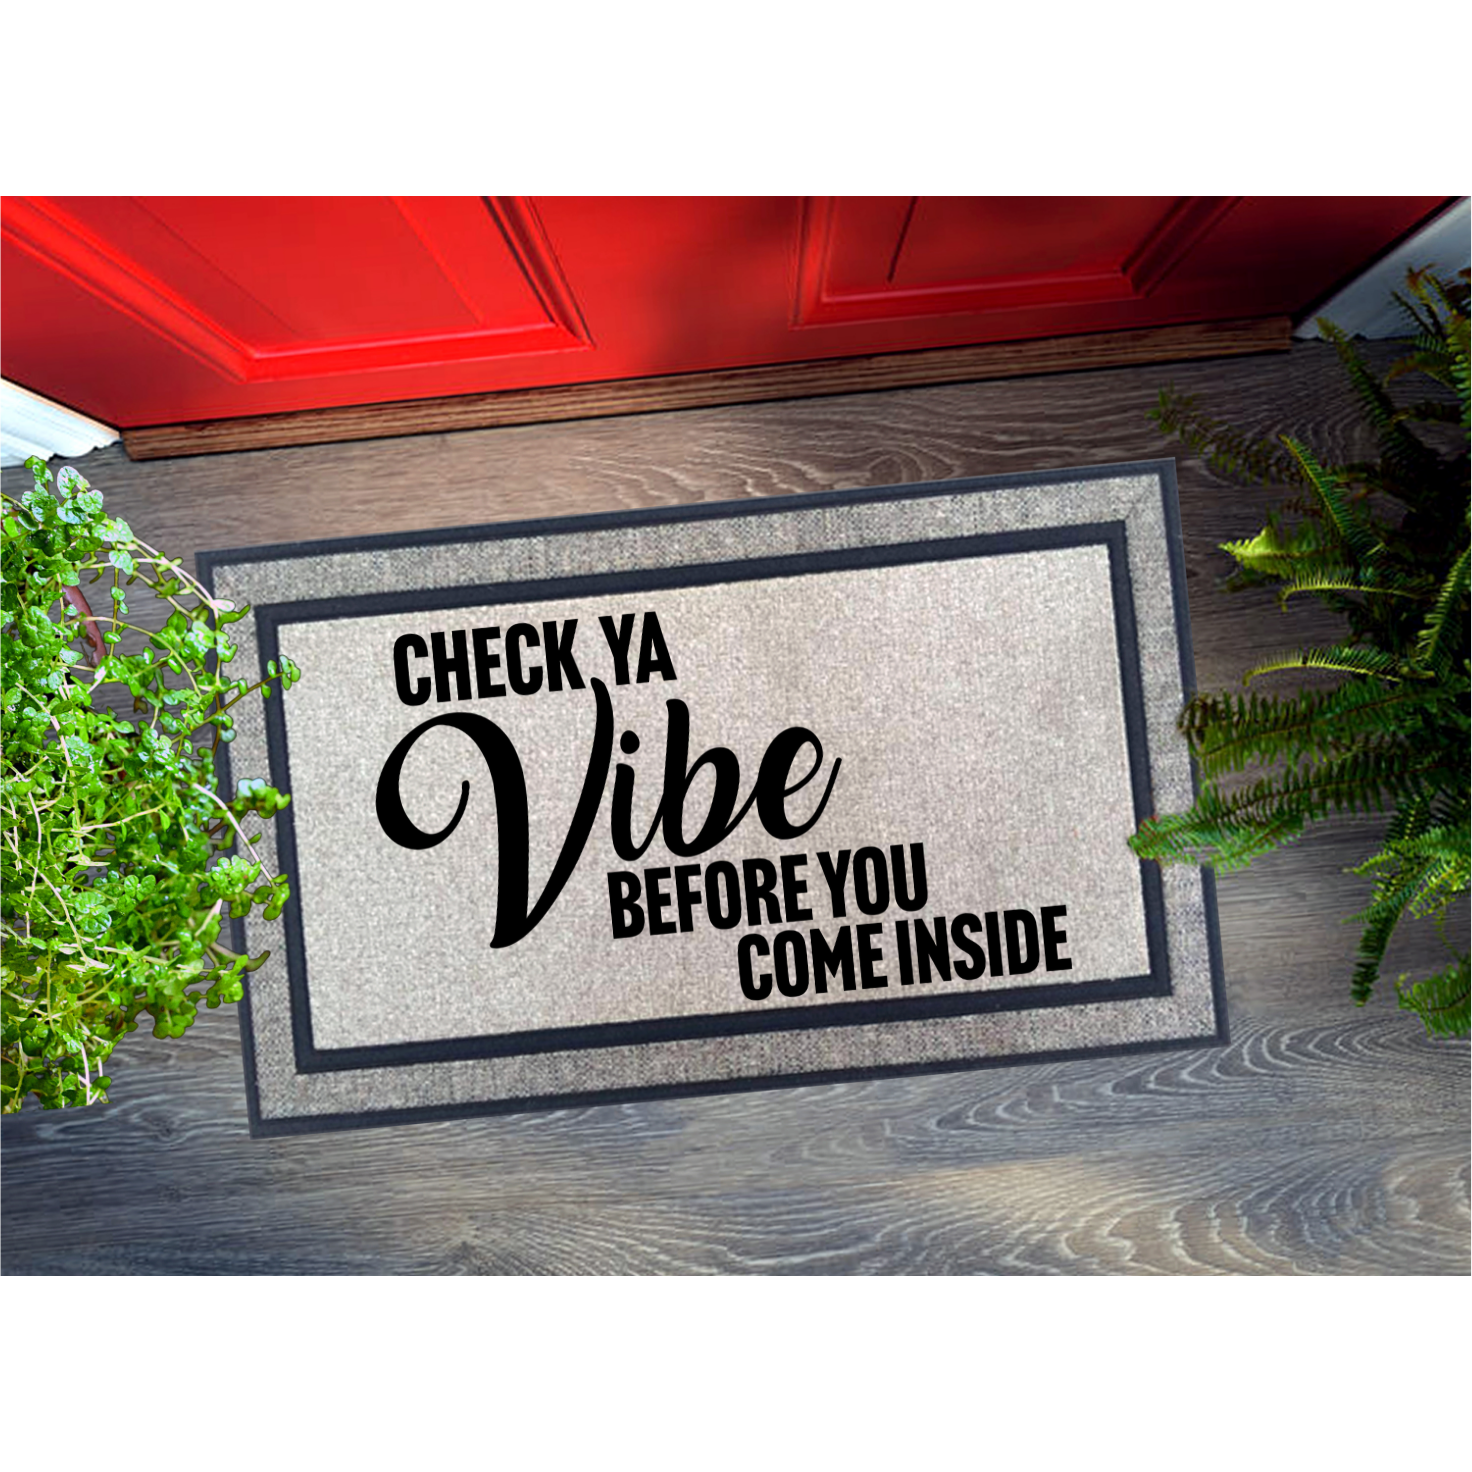 Positive Vibes Inside Doormat, Shoes Door Mat, Personalized